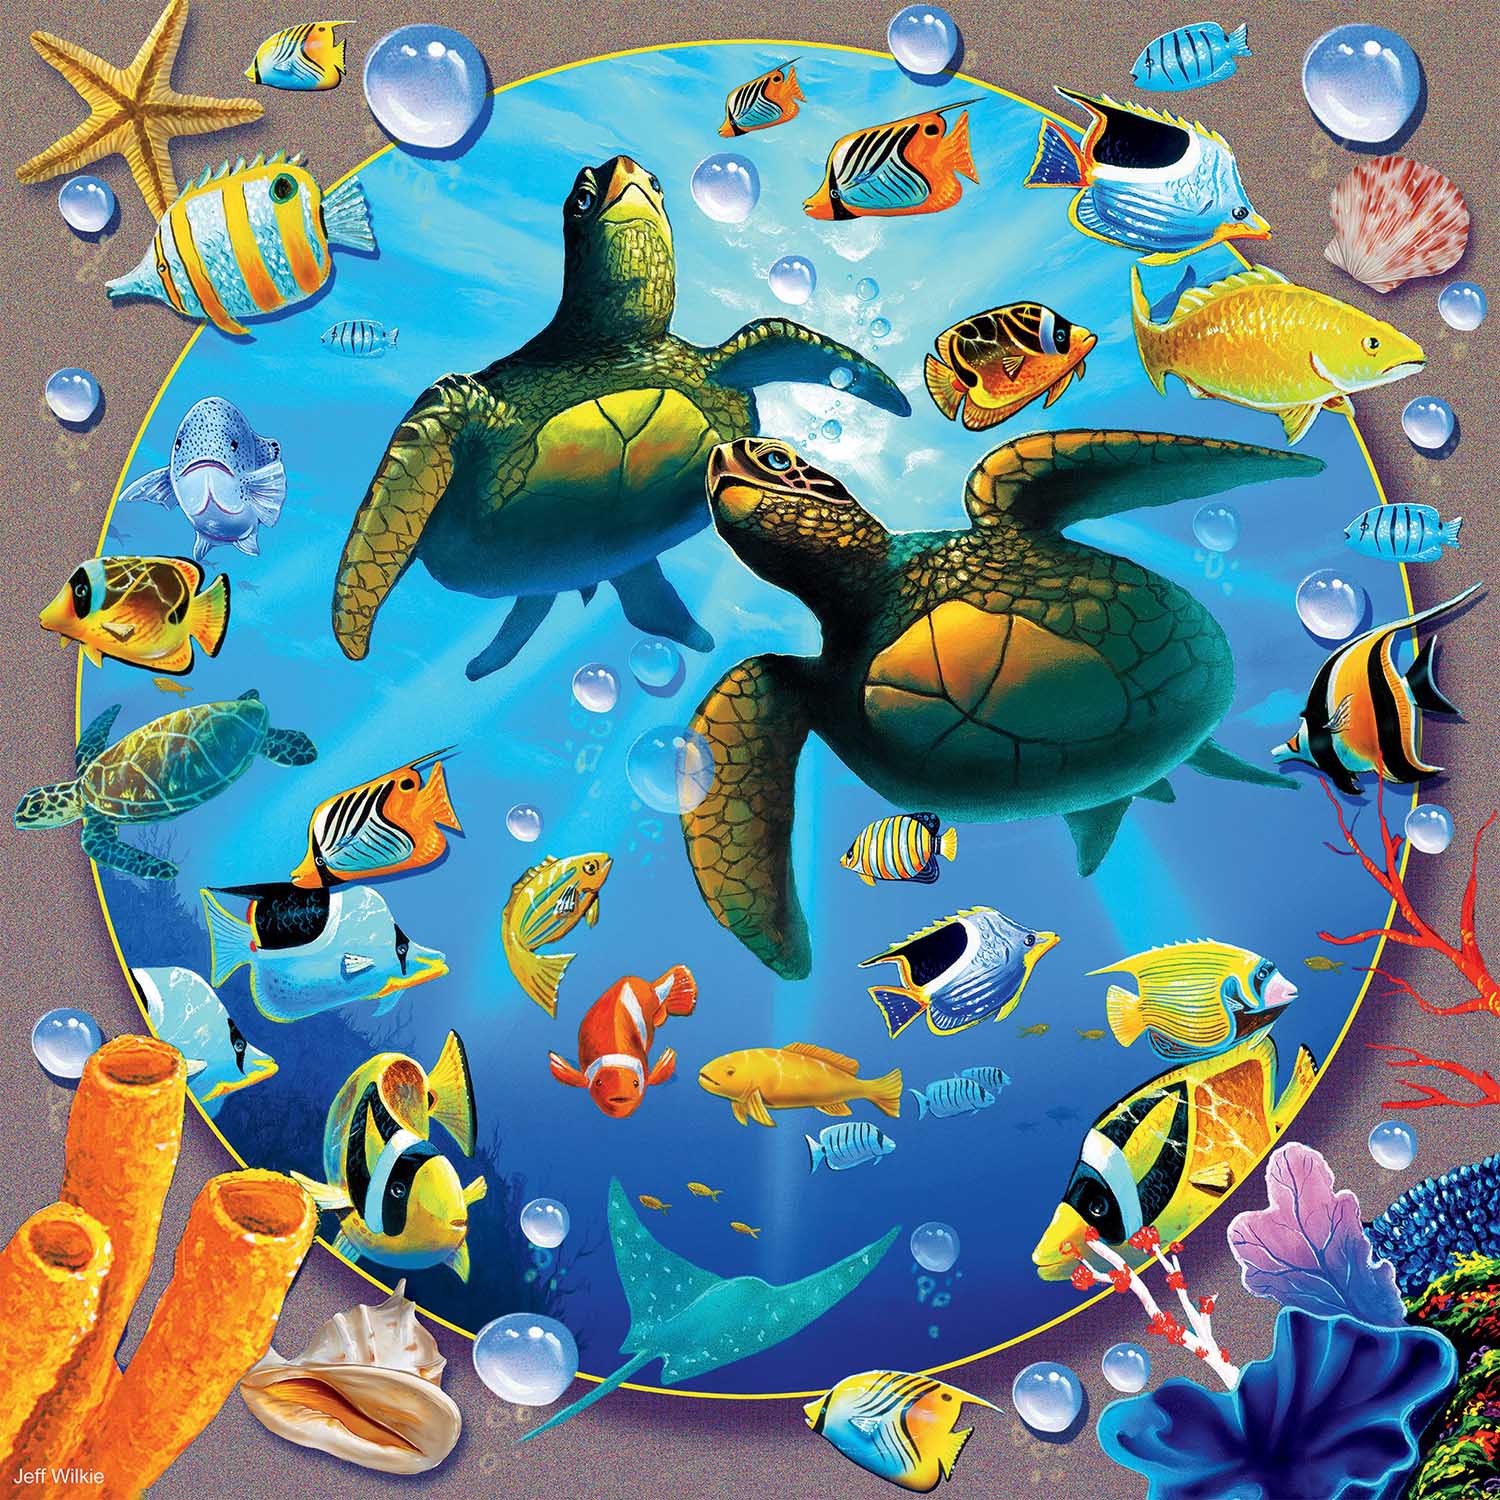 Honu Paradise Sea Life Jigsaw Puzzle